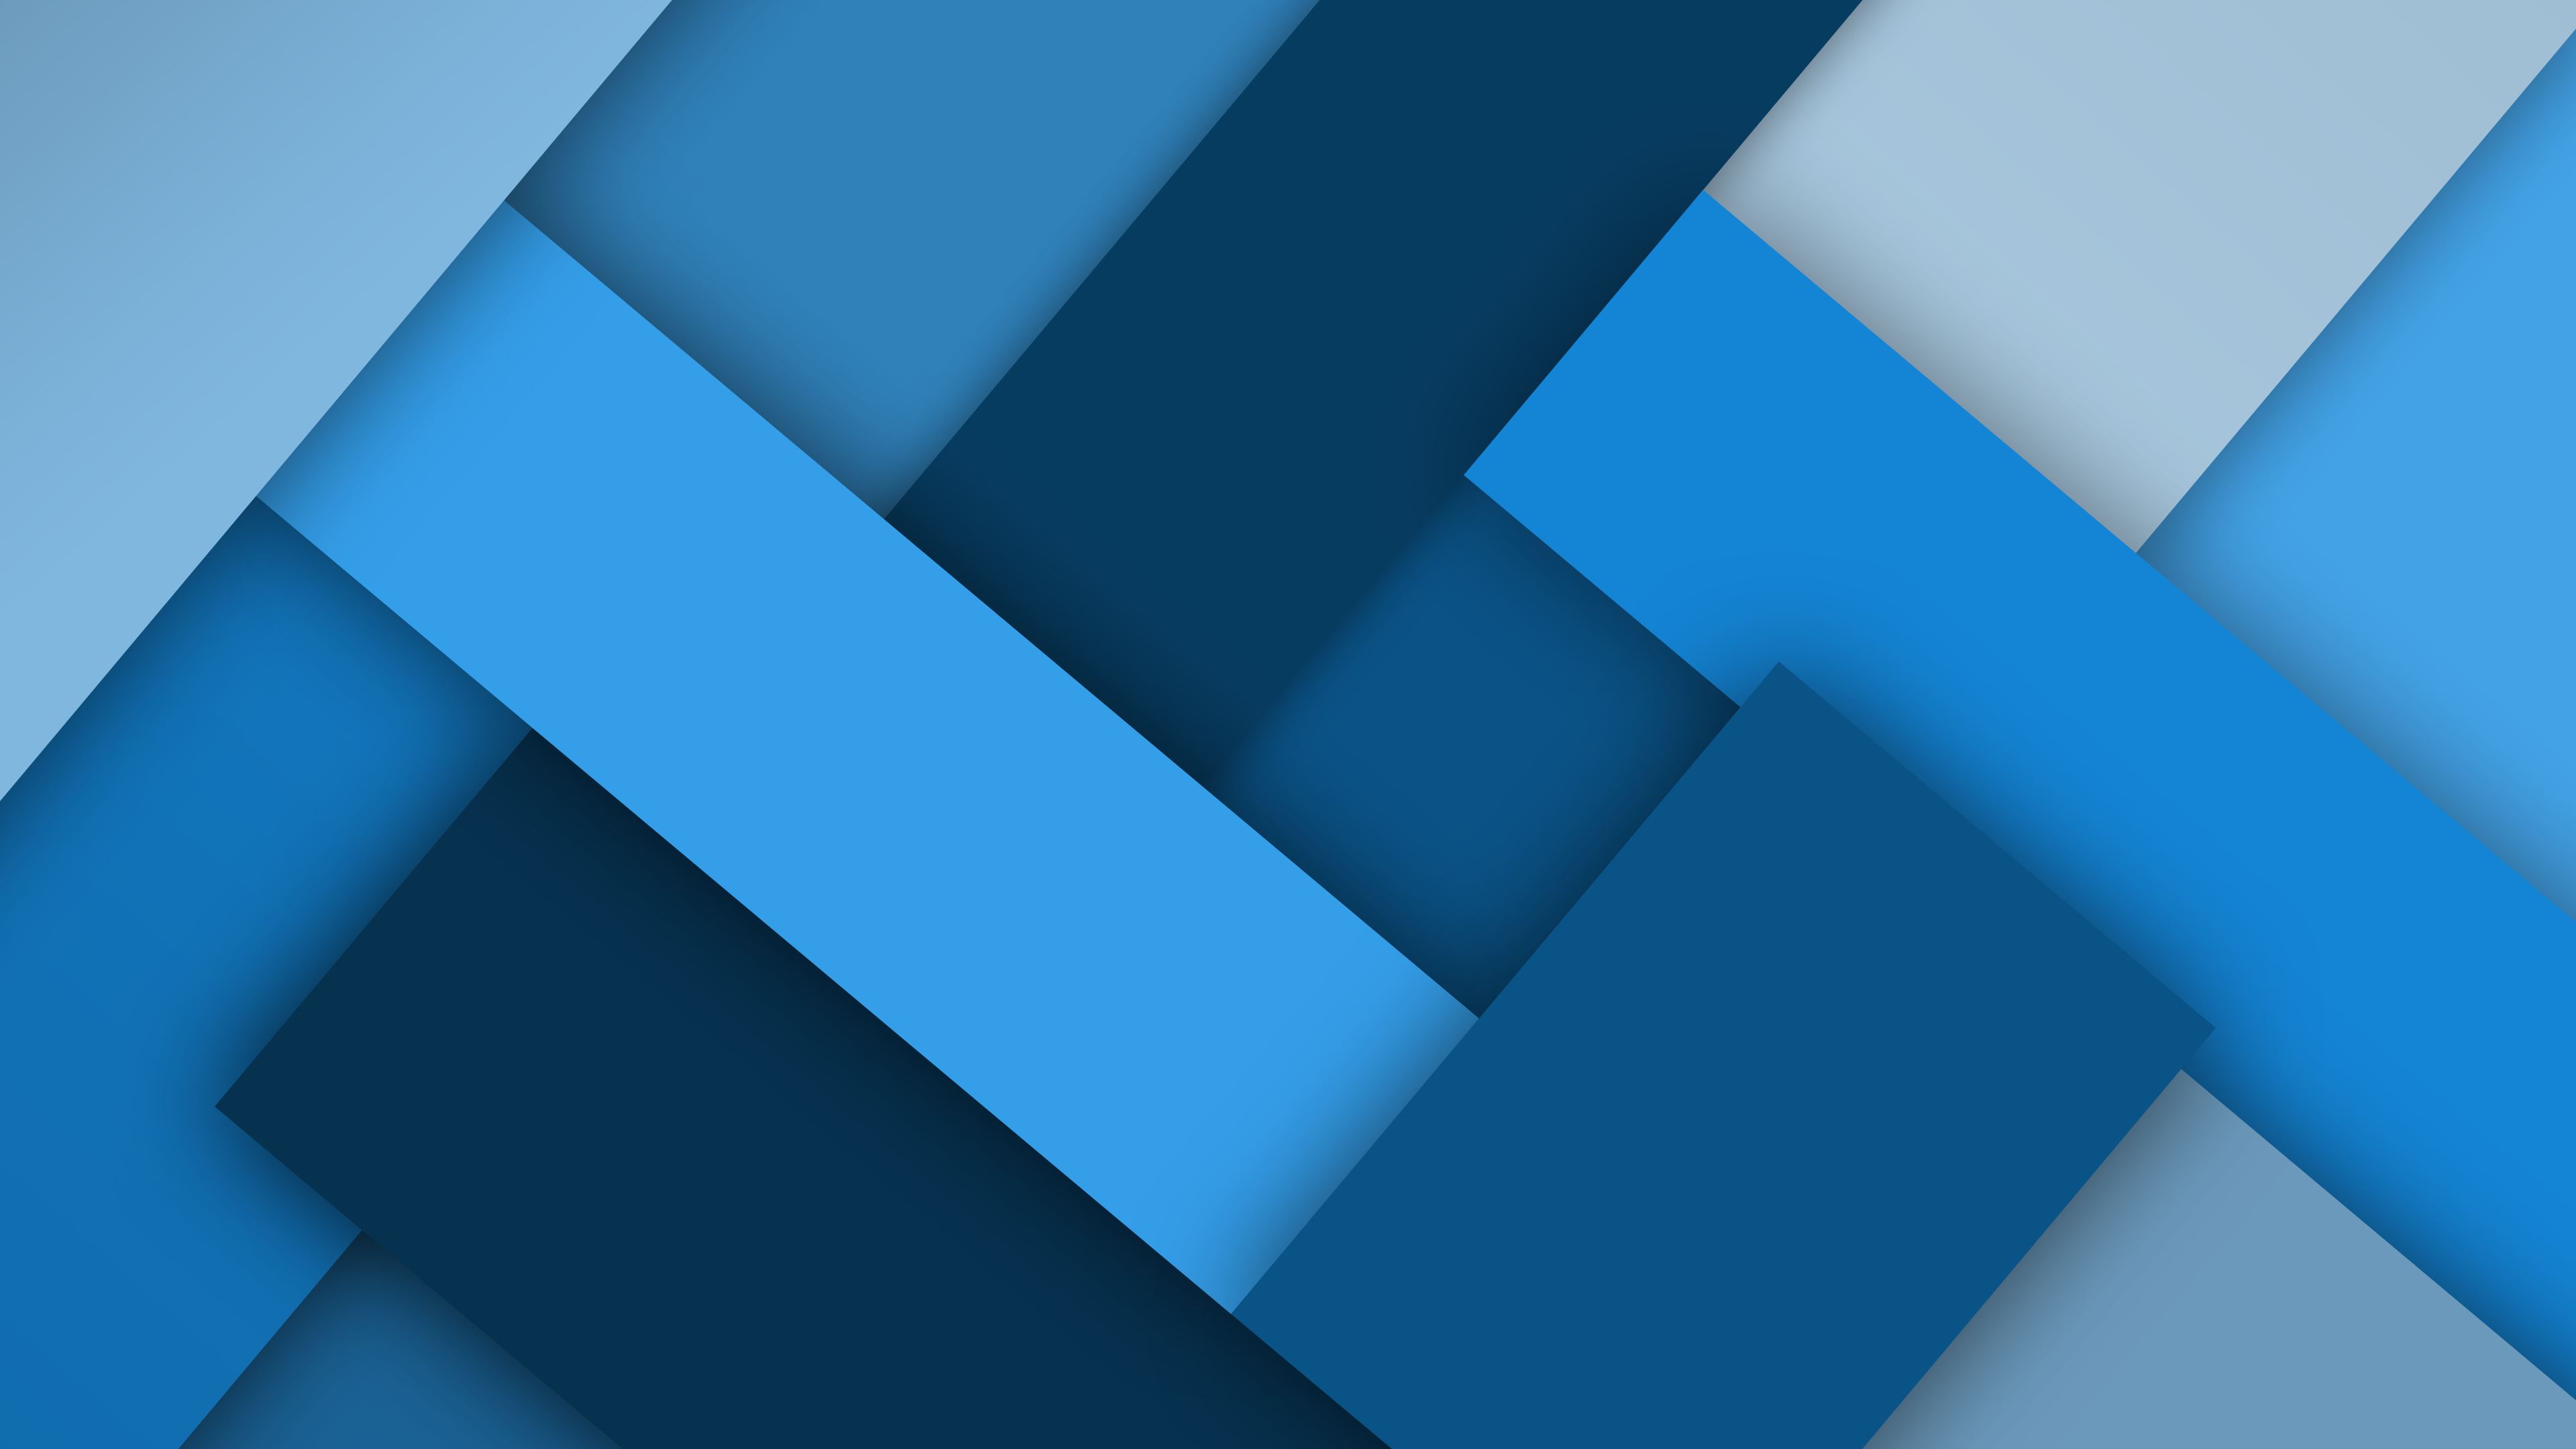 Design Ultra HD Blue Wallpaper 4k .wallpapertip.com